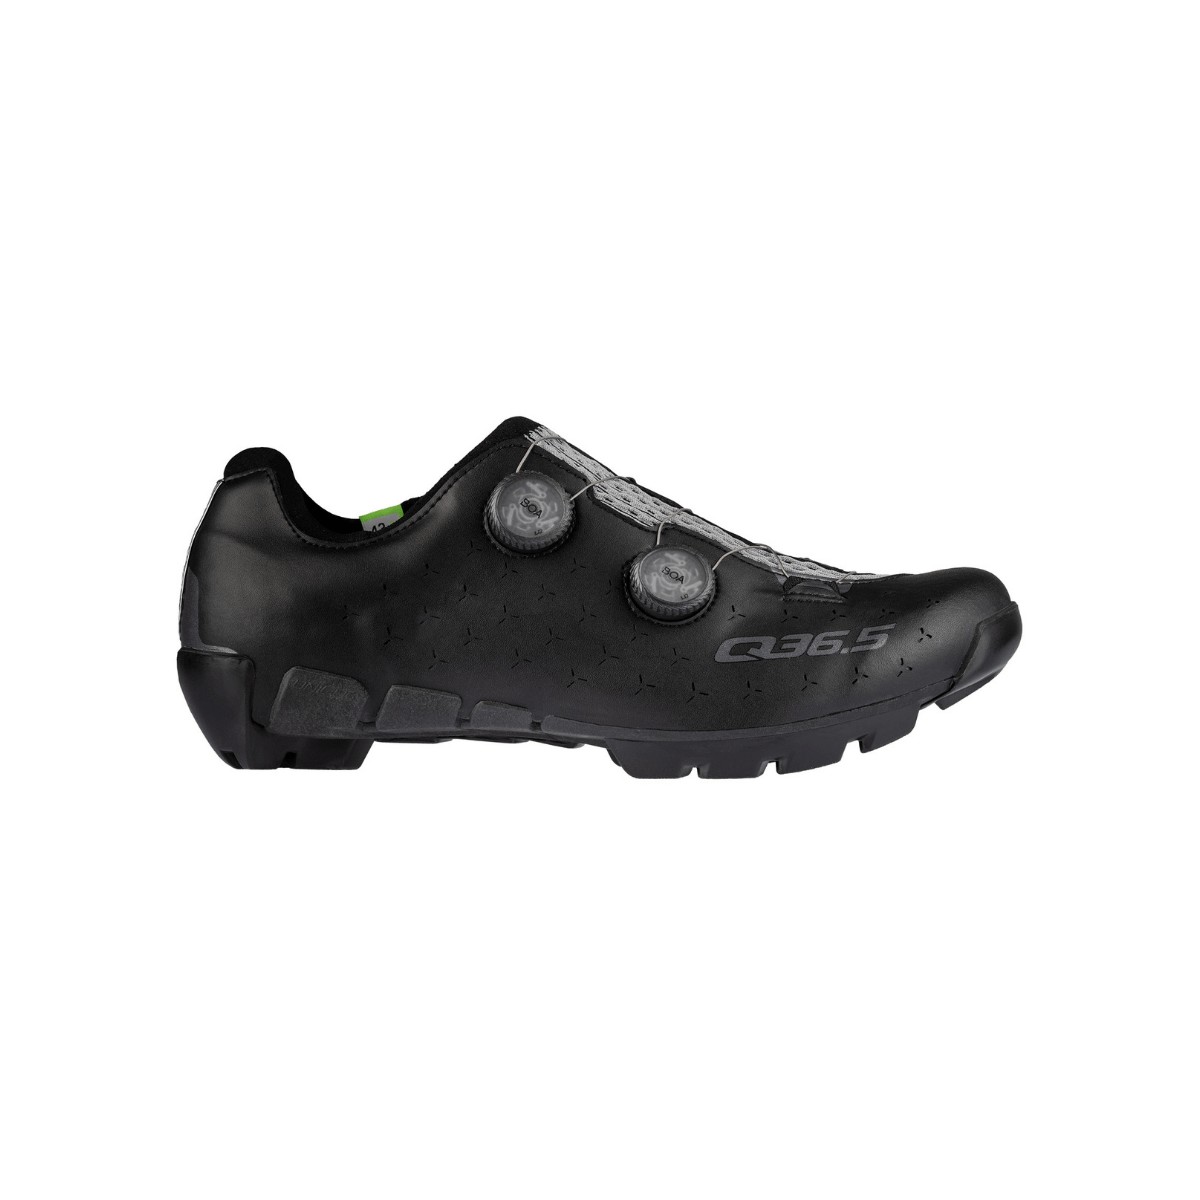 Q36.5 Unique Adventure Black Shoes, Size 42 - EUR